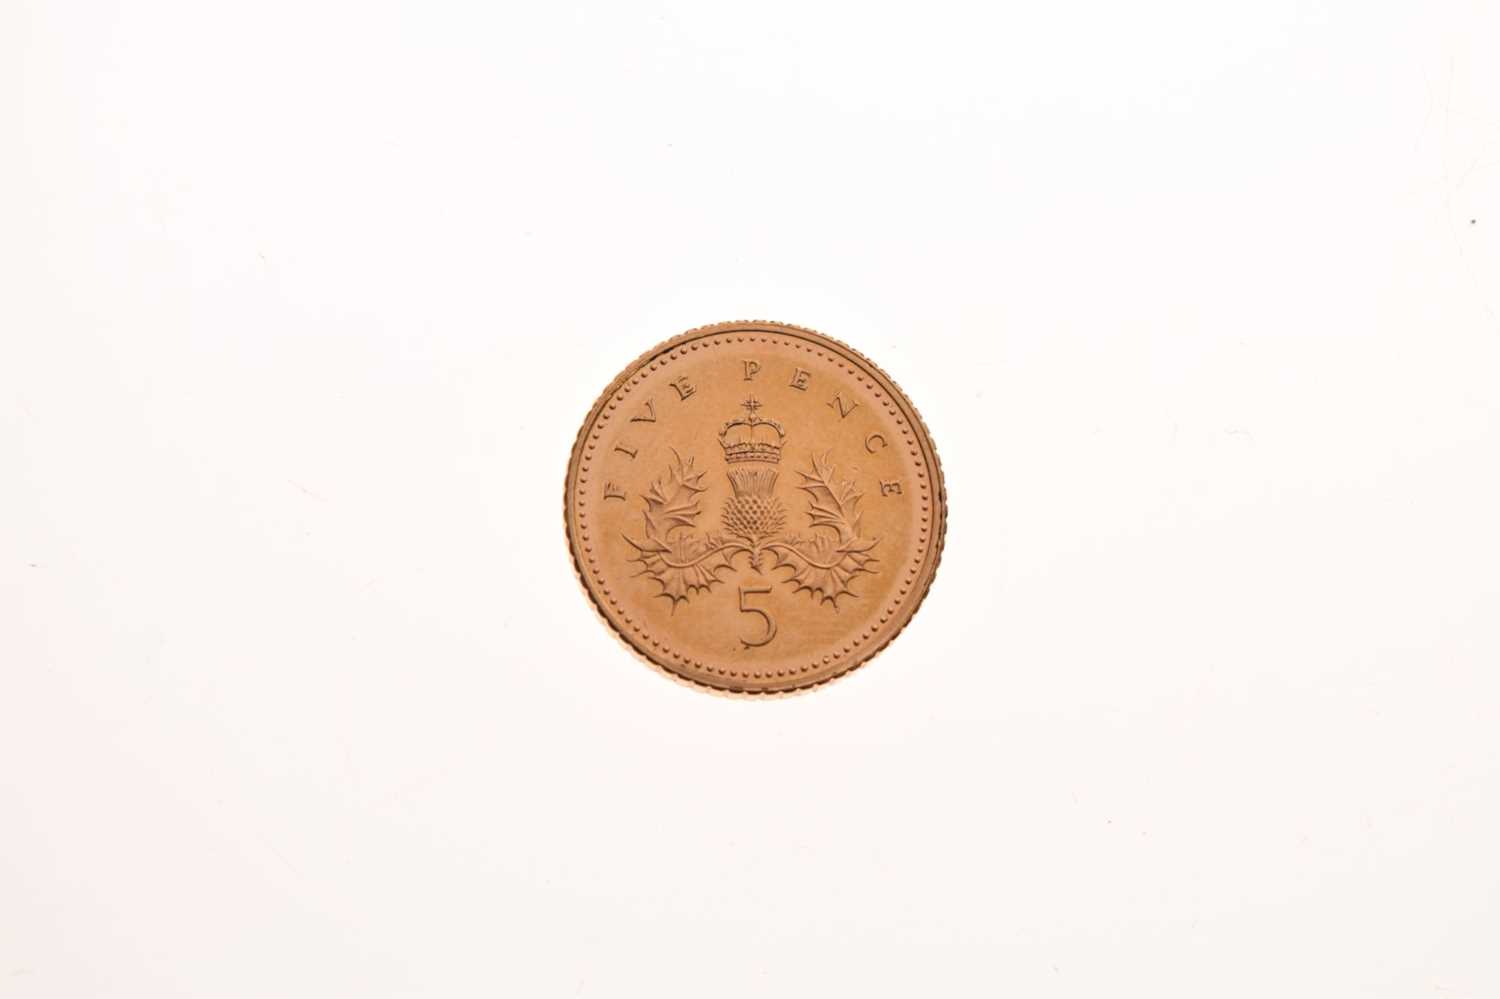 Queen Elizabeth II gold 5p coin, 2002 - Image 3 of 4